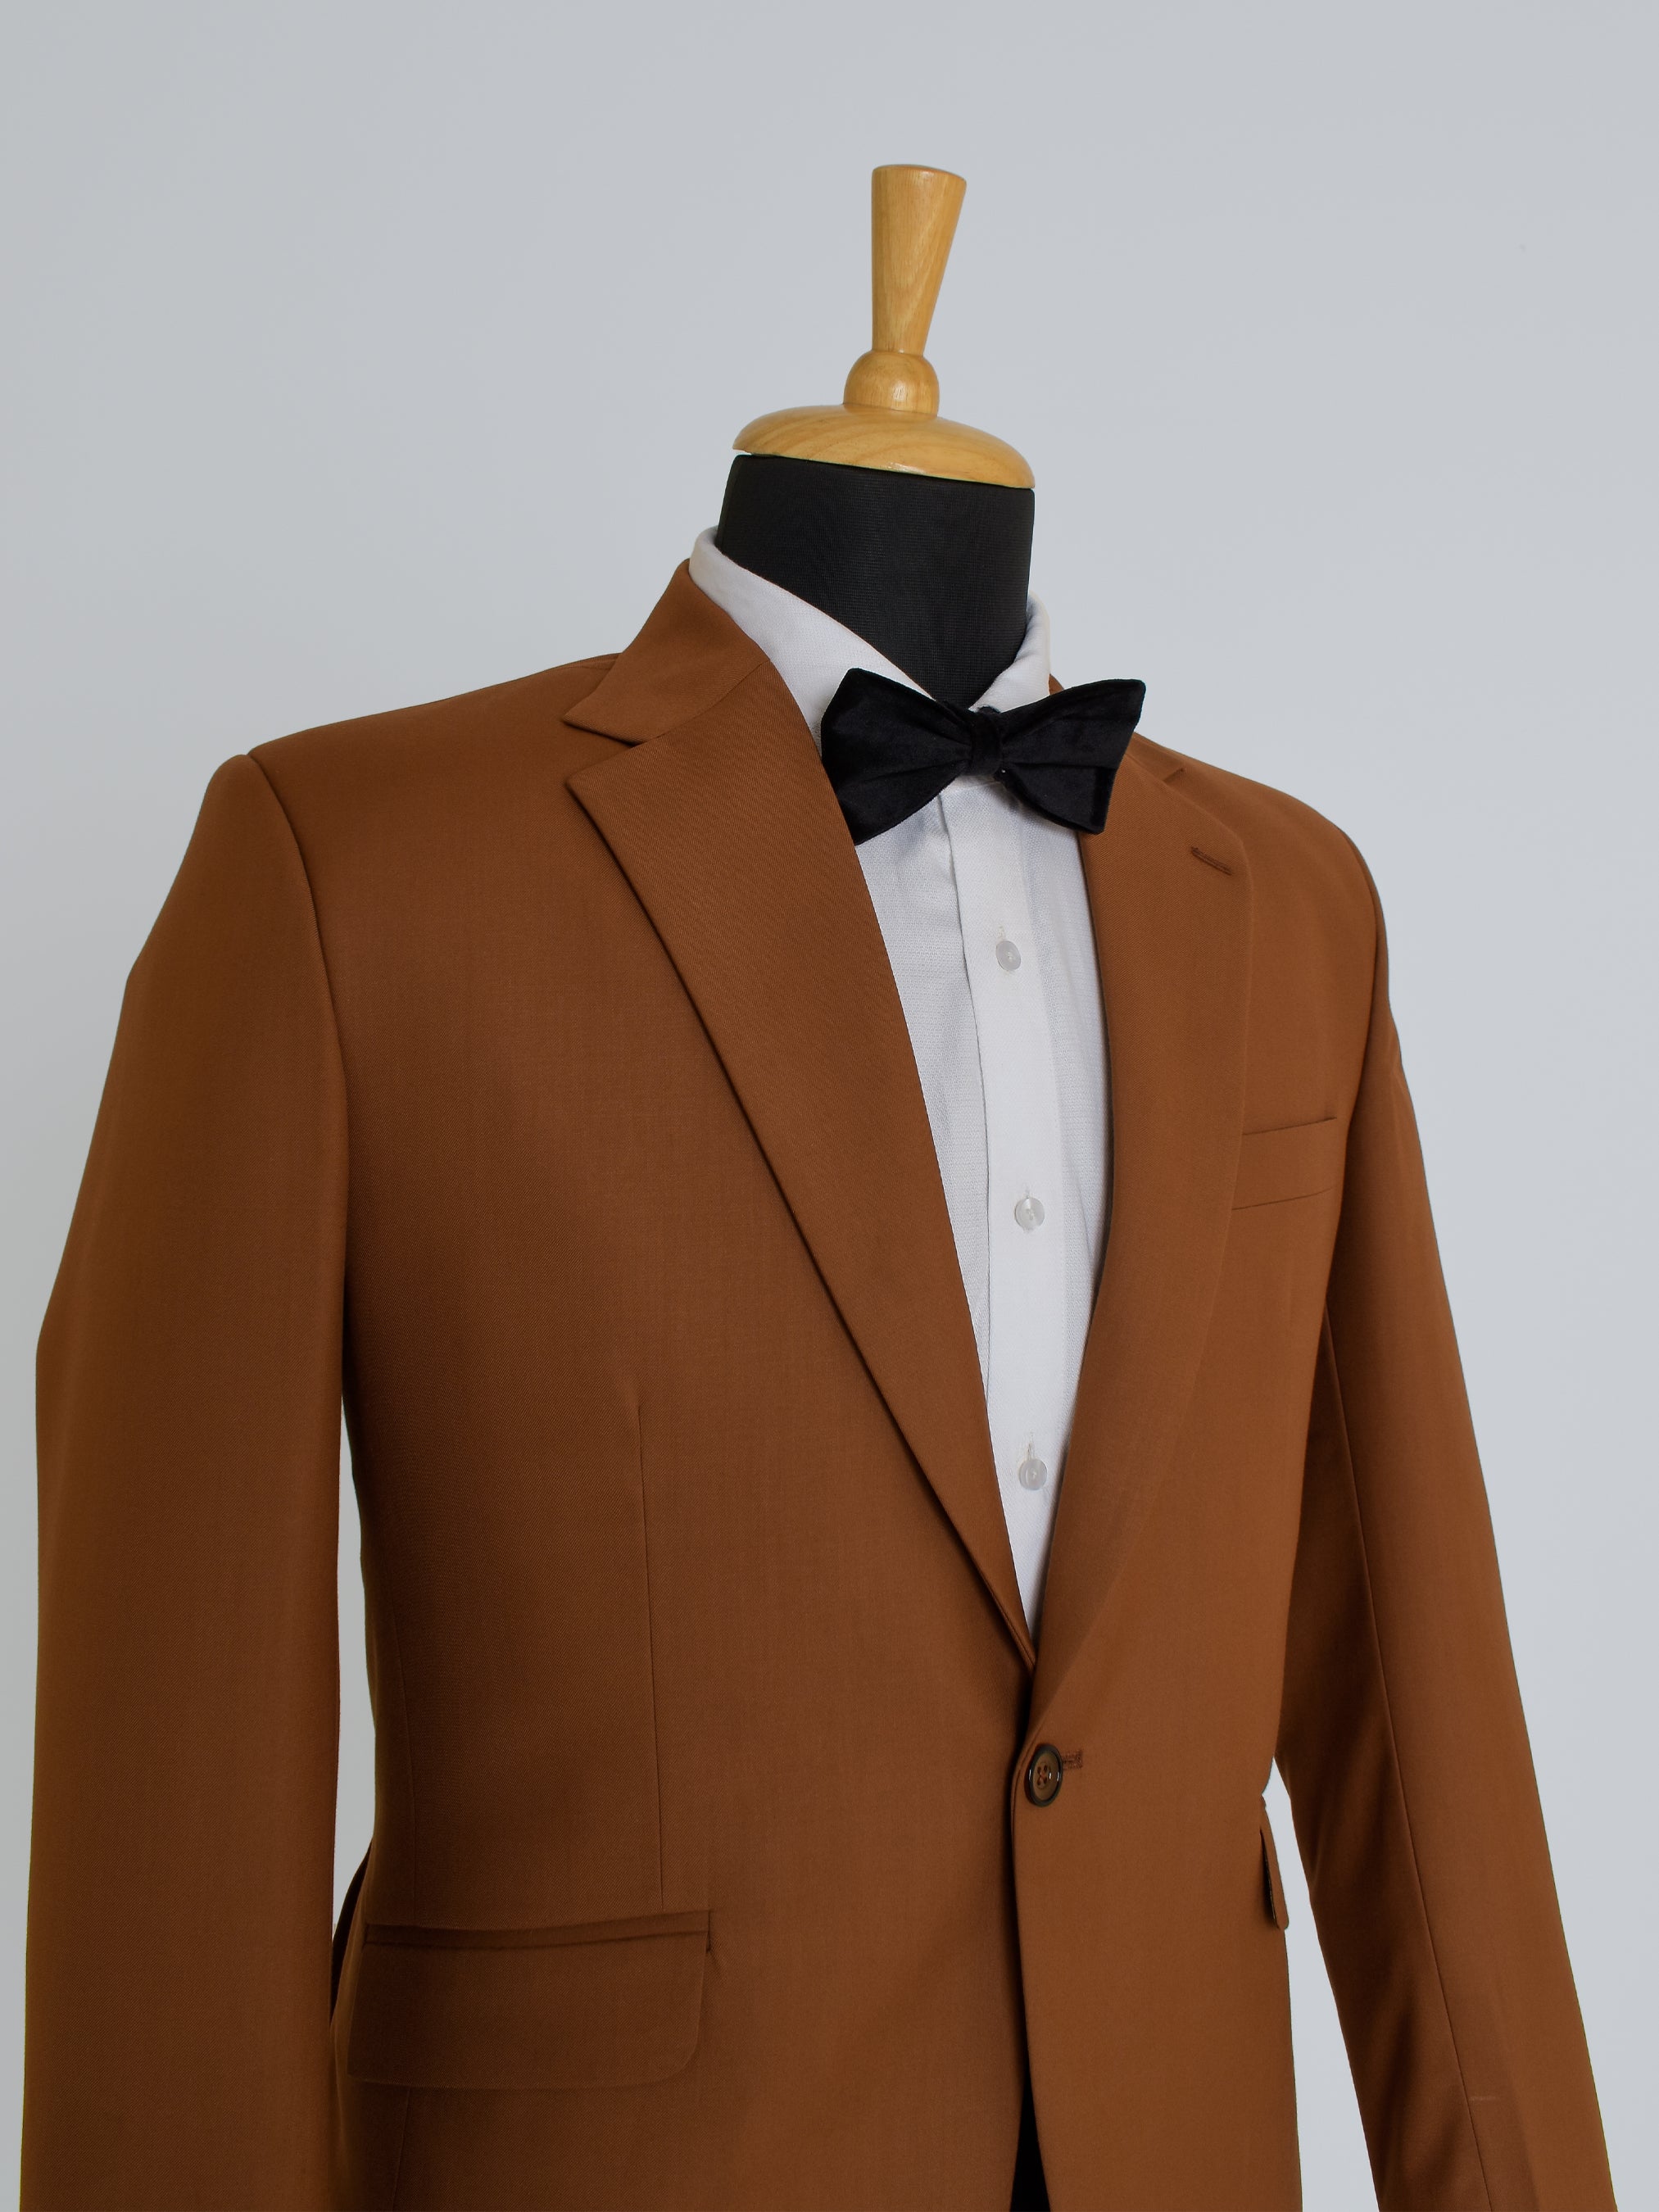 Chestnut Business Suit